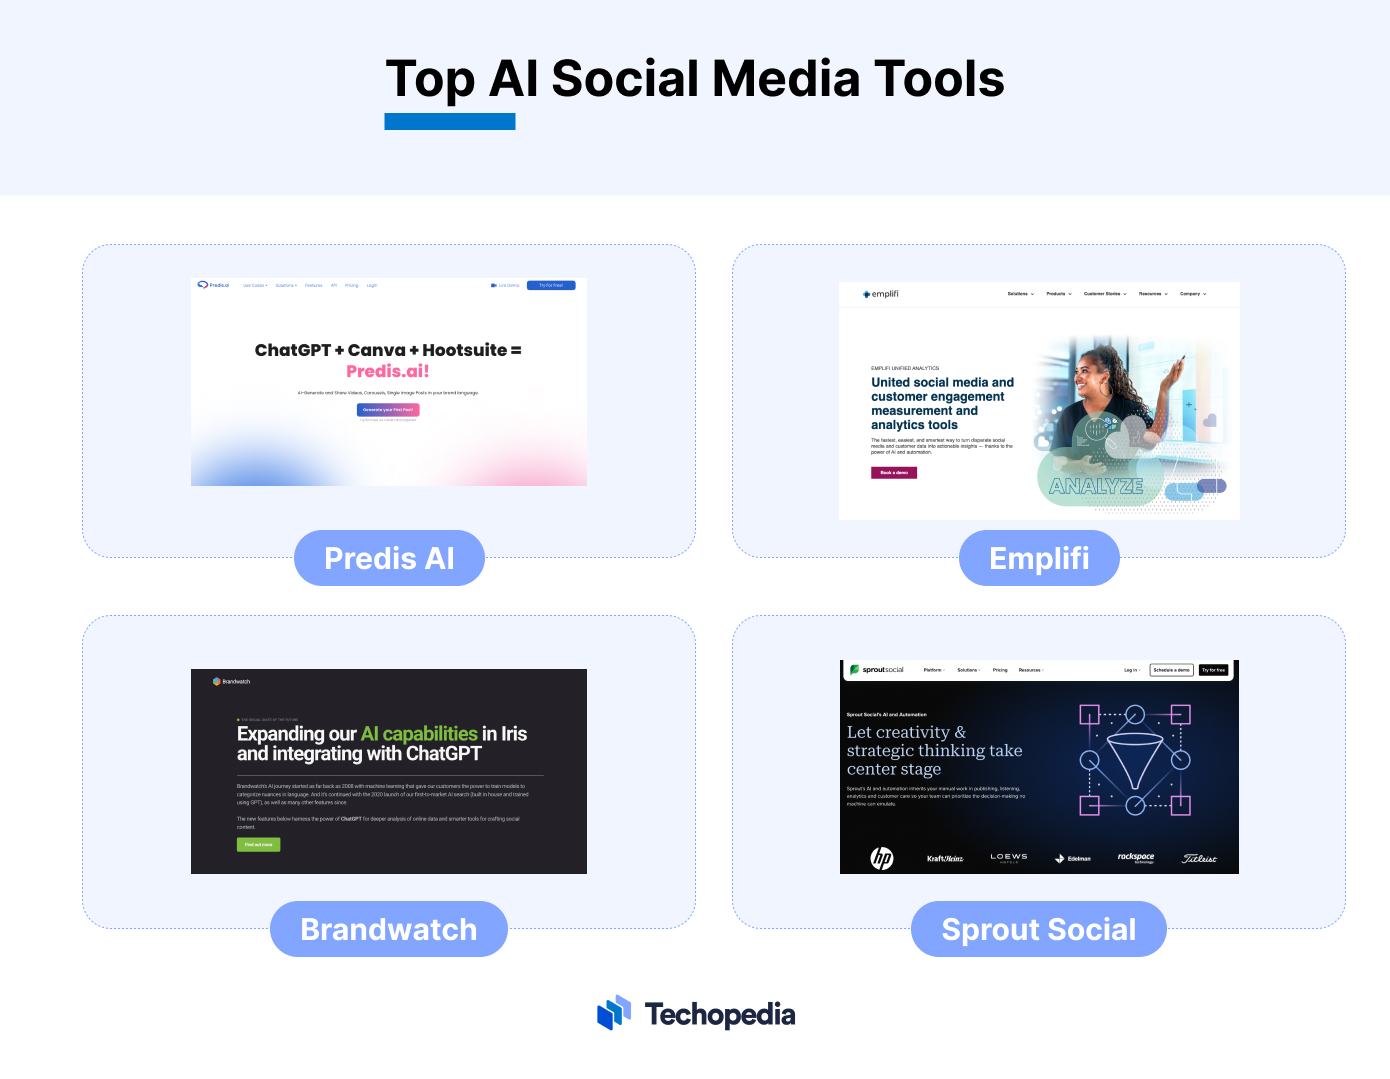 Top AI Social Media Tools